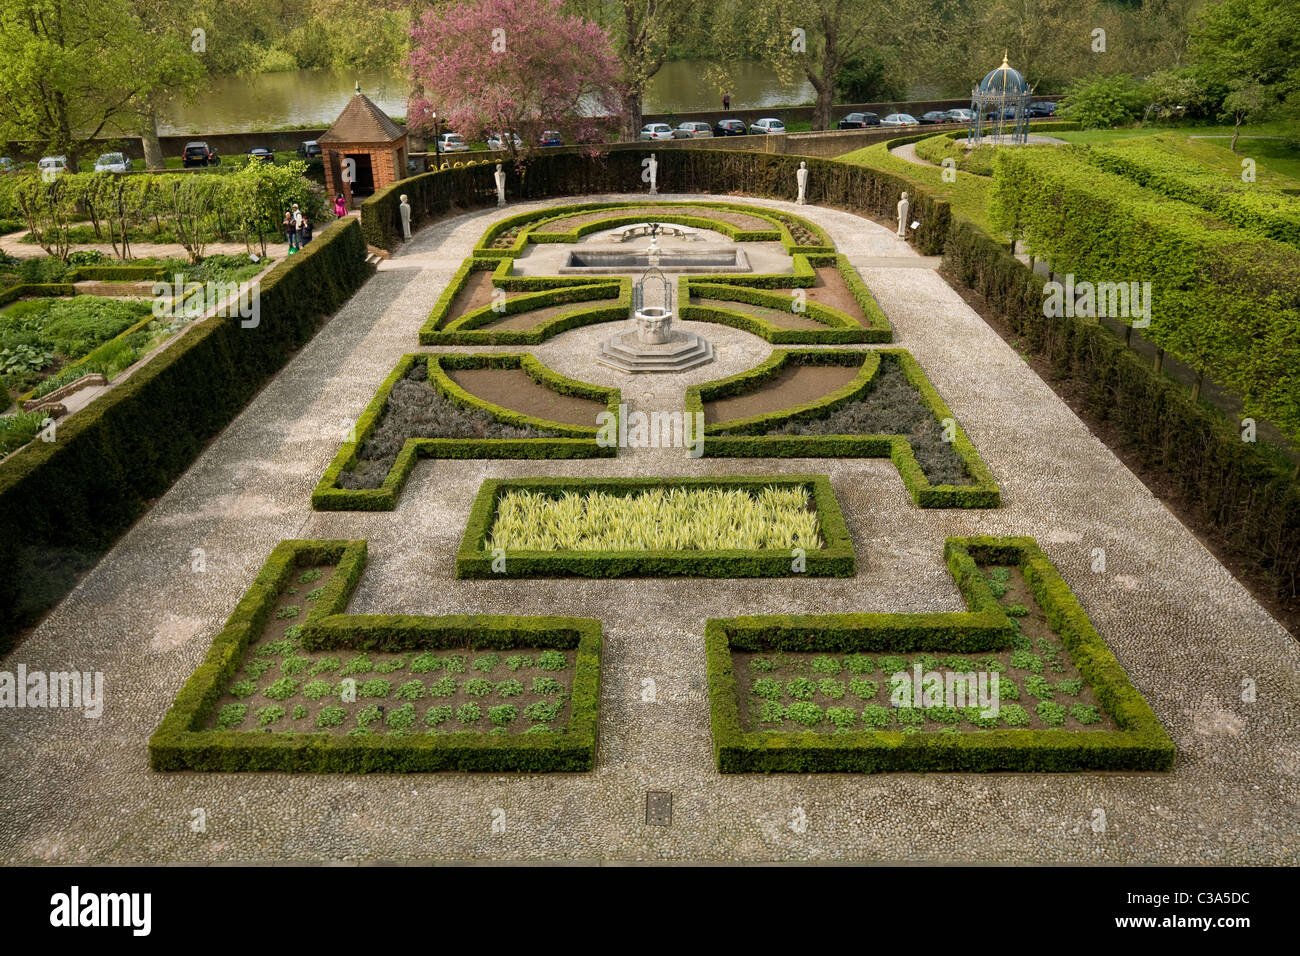 La formale della regina: Giardino del XVII secolo e in stile giardino situato dietro / sul retro della casa Olandese / Kew Palace. Regno Unito. Foto Stock